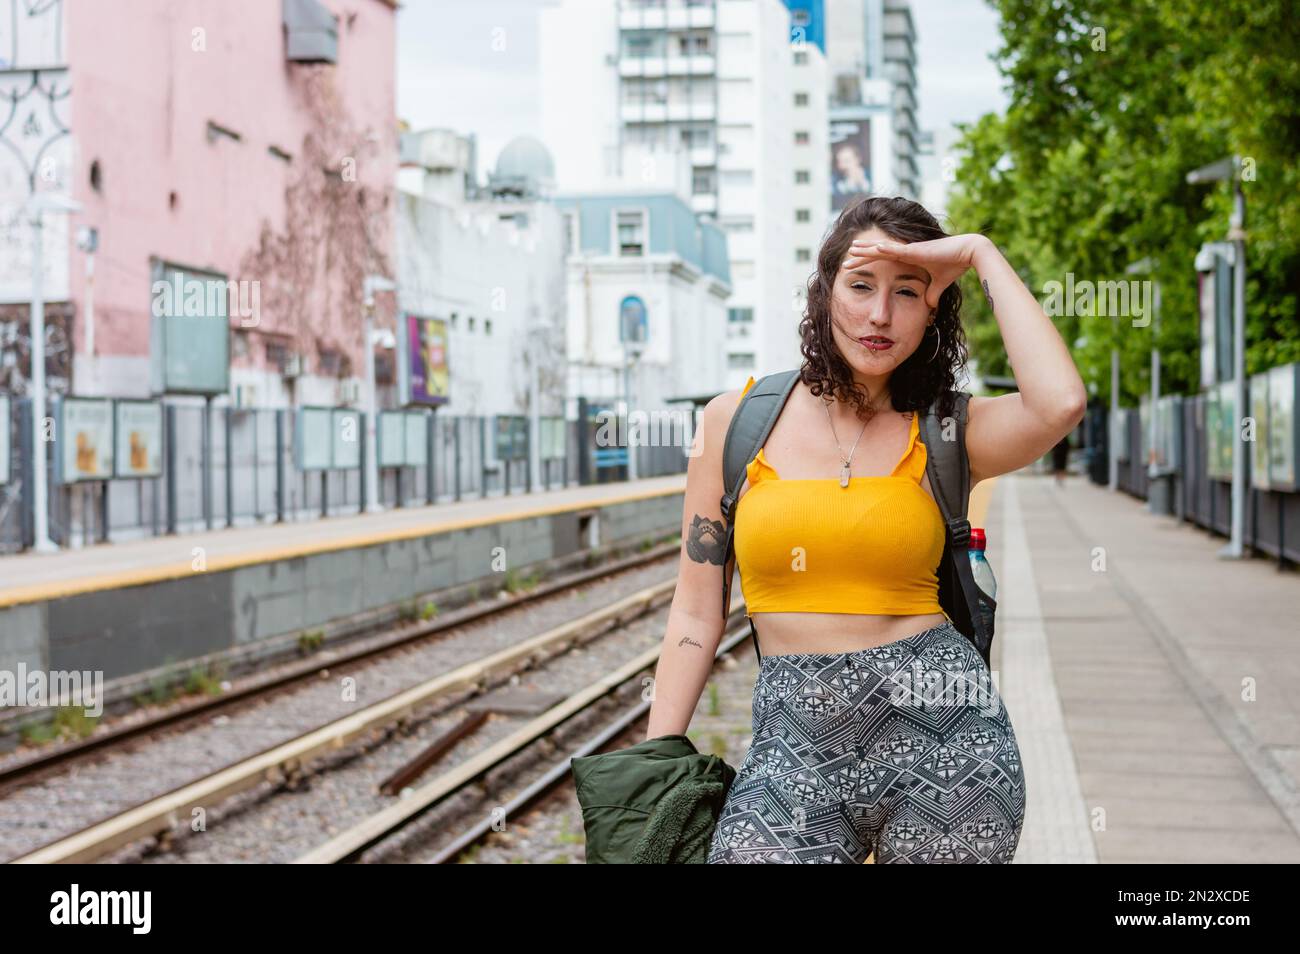 giovane donna latina di etnia argentina, con abiti gialli e uno zaino, è angosciata in piedi sulla piattaforma con la mano sulla fronte Foto Stock